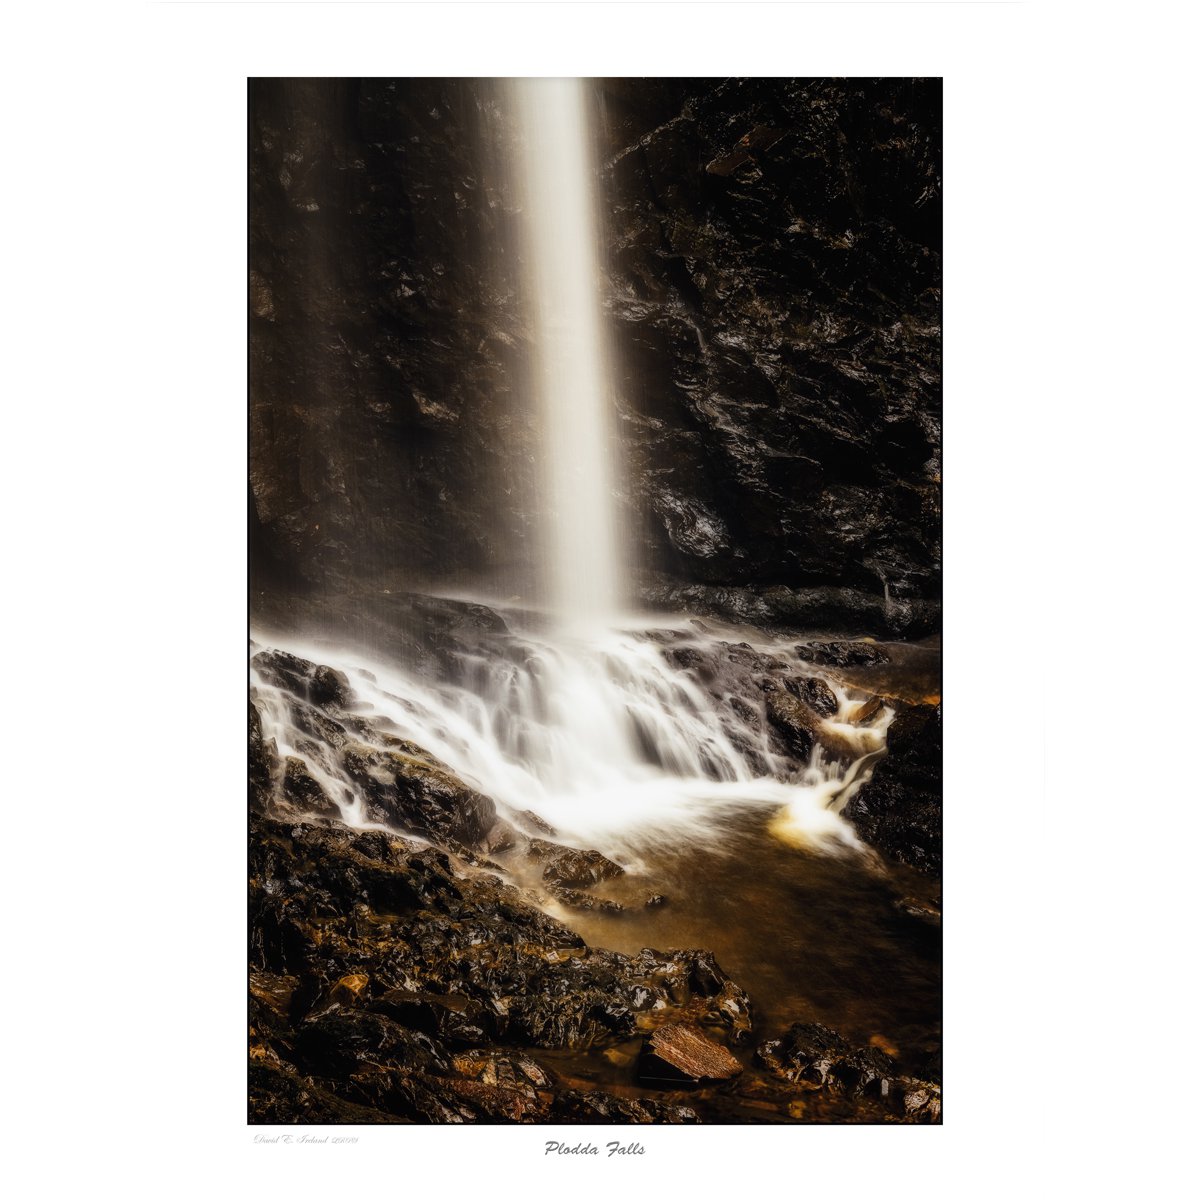 Plodda Falls by David Ireland